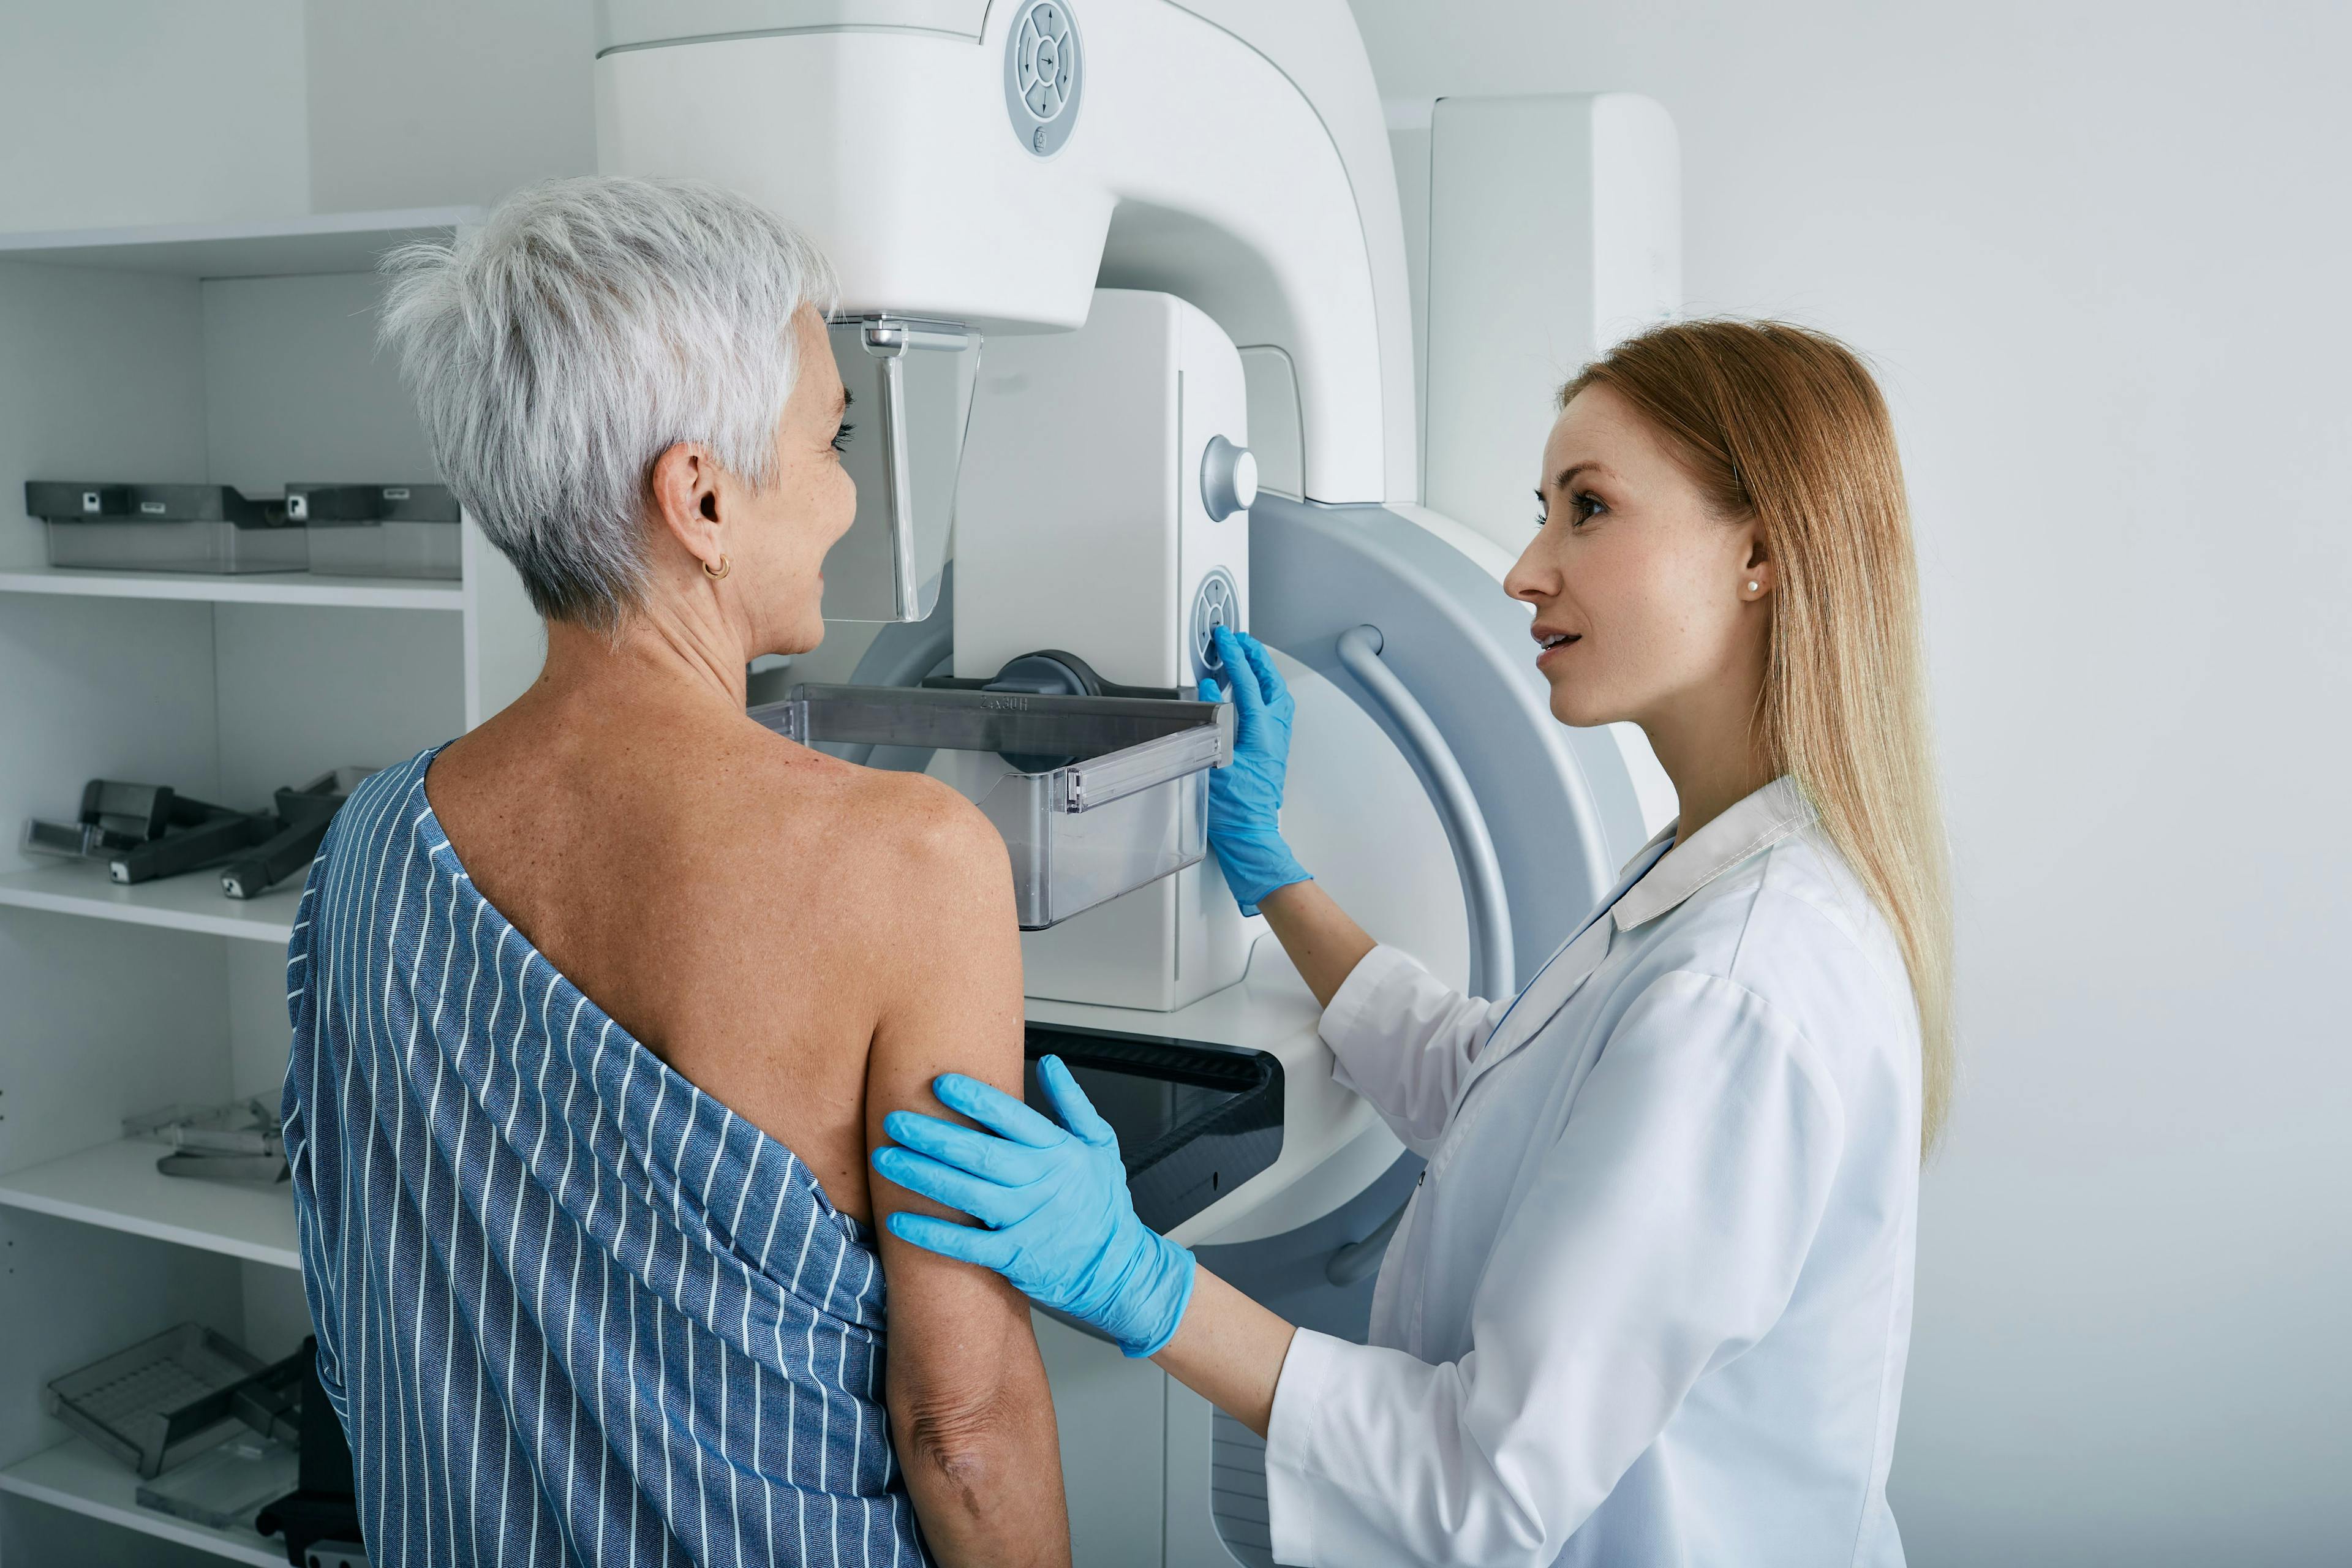 Older adult patient receiving mammogram | Image Credit: Peakstock - stock.adobe.com